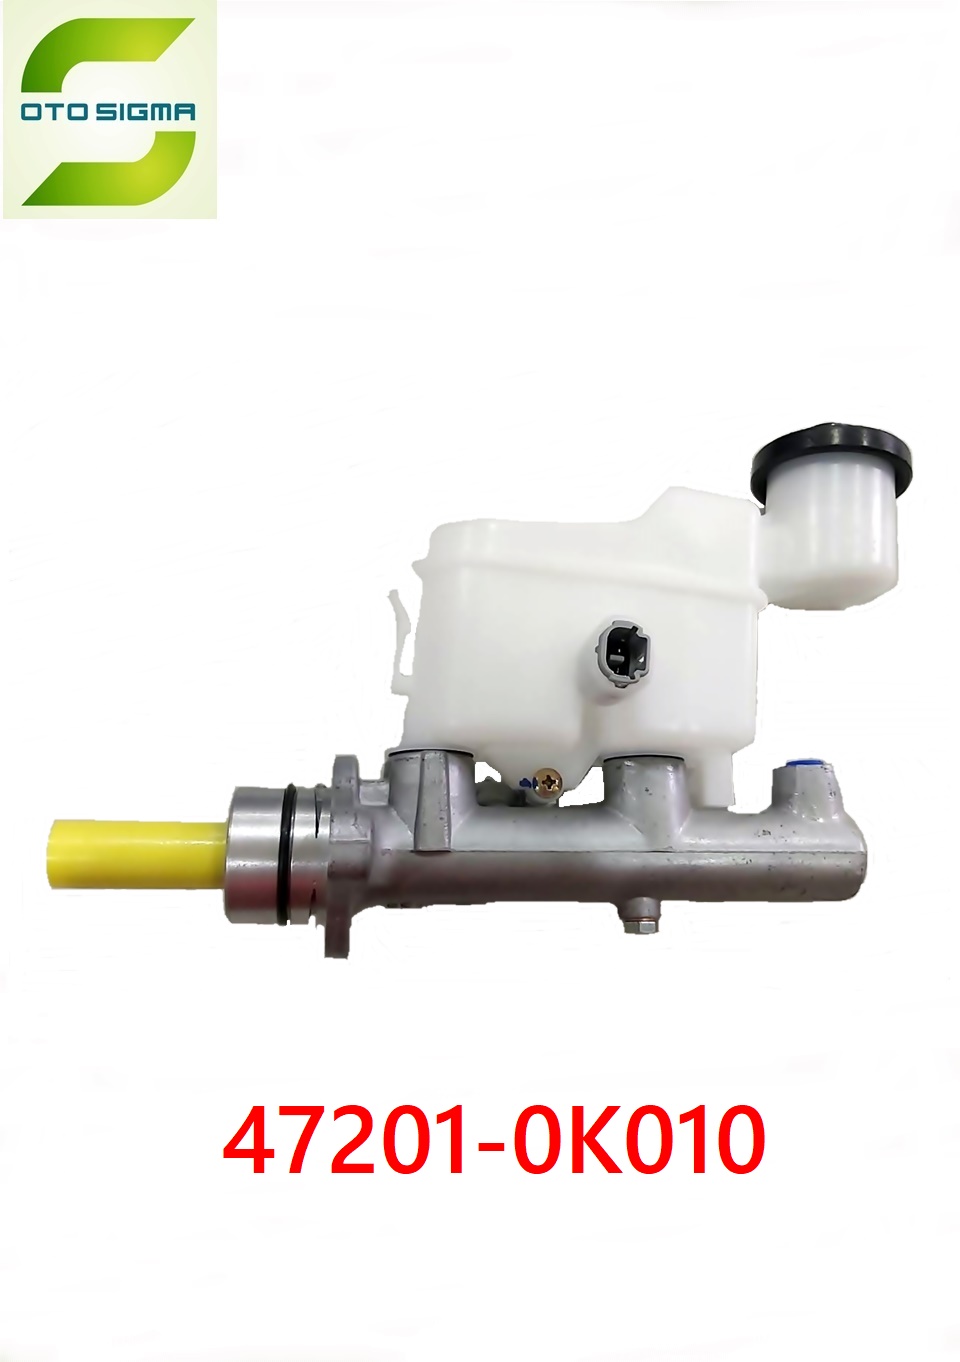 豐田制動總泵 47201-0k010-47201-0k010